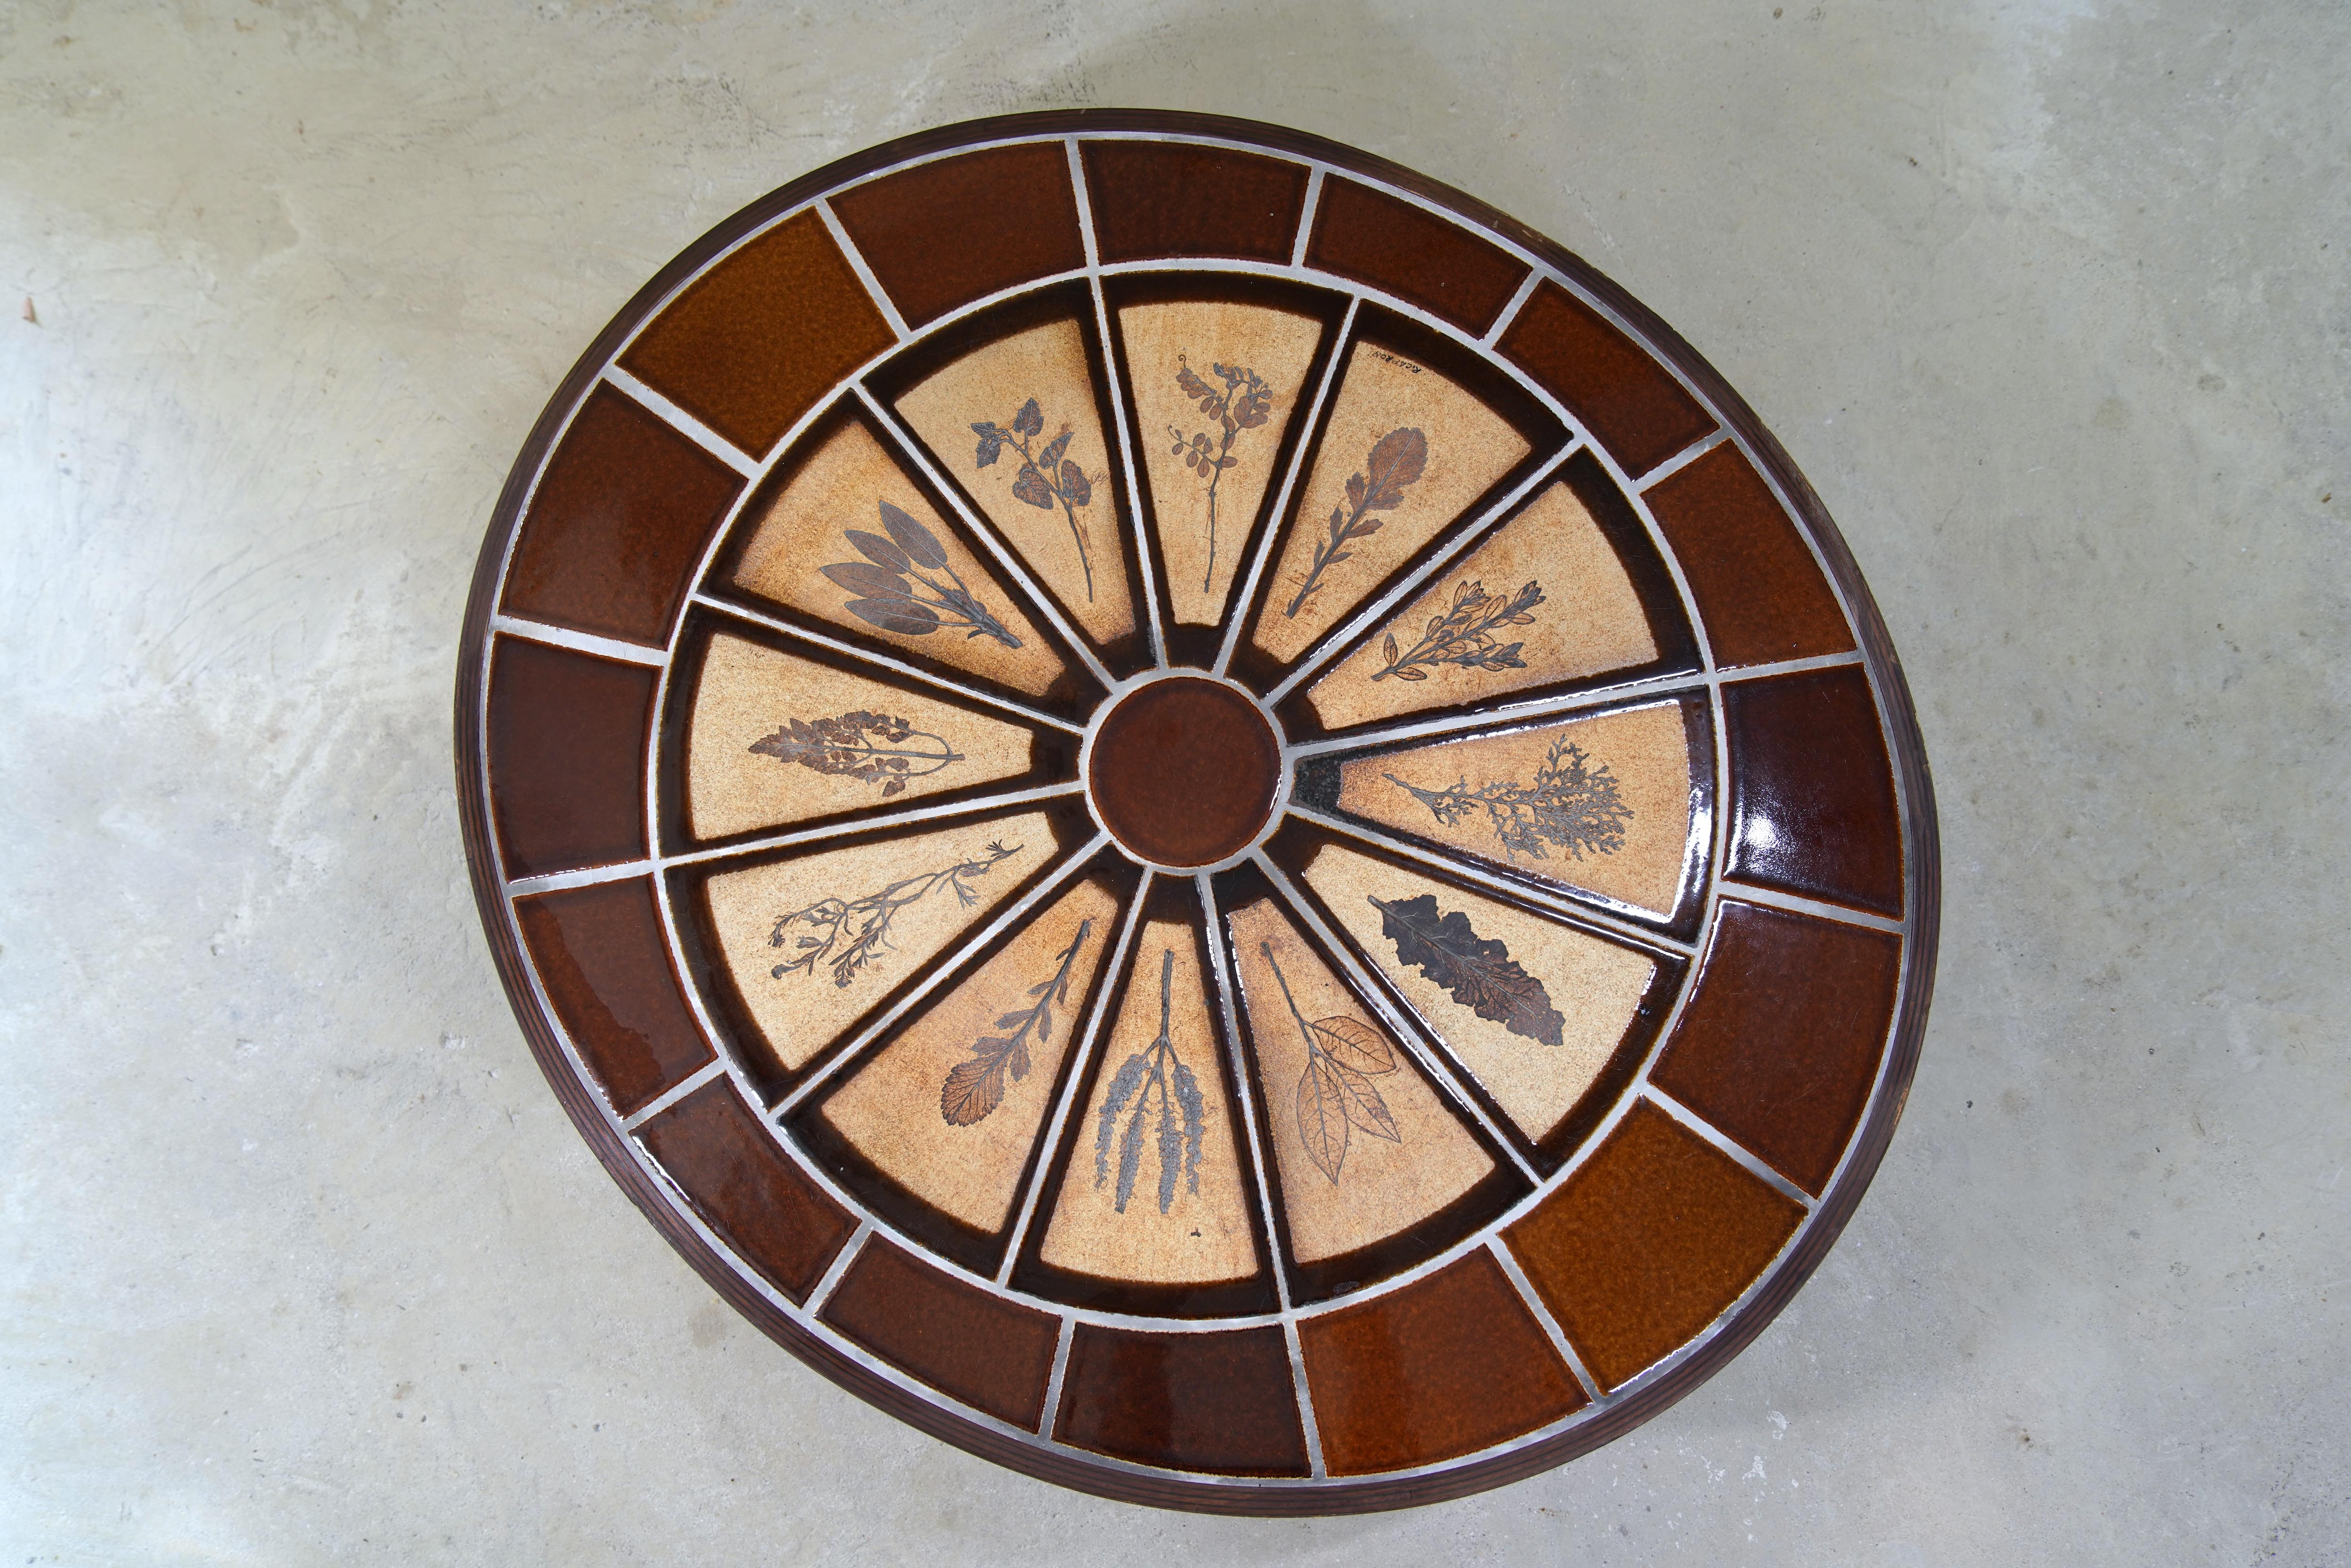 Merveilleuse table basse ovale en céramique de Roger Capron avec des carreaux de Garrigue de France, vers les années 1960.

Les carreaux de Garrigue, fabriqués à la main, sont issus d'une technique où de vraies feuilles sont pressées dans l'argile